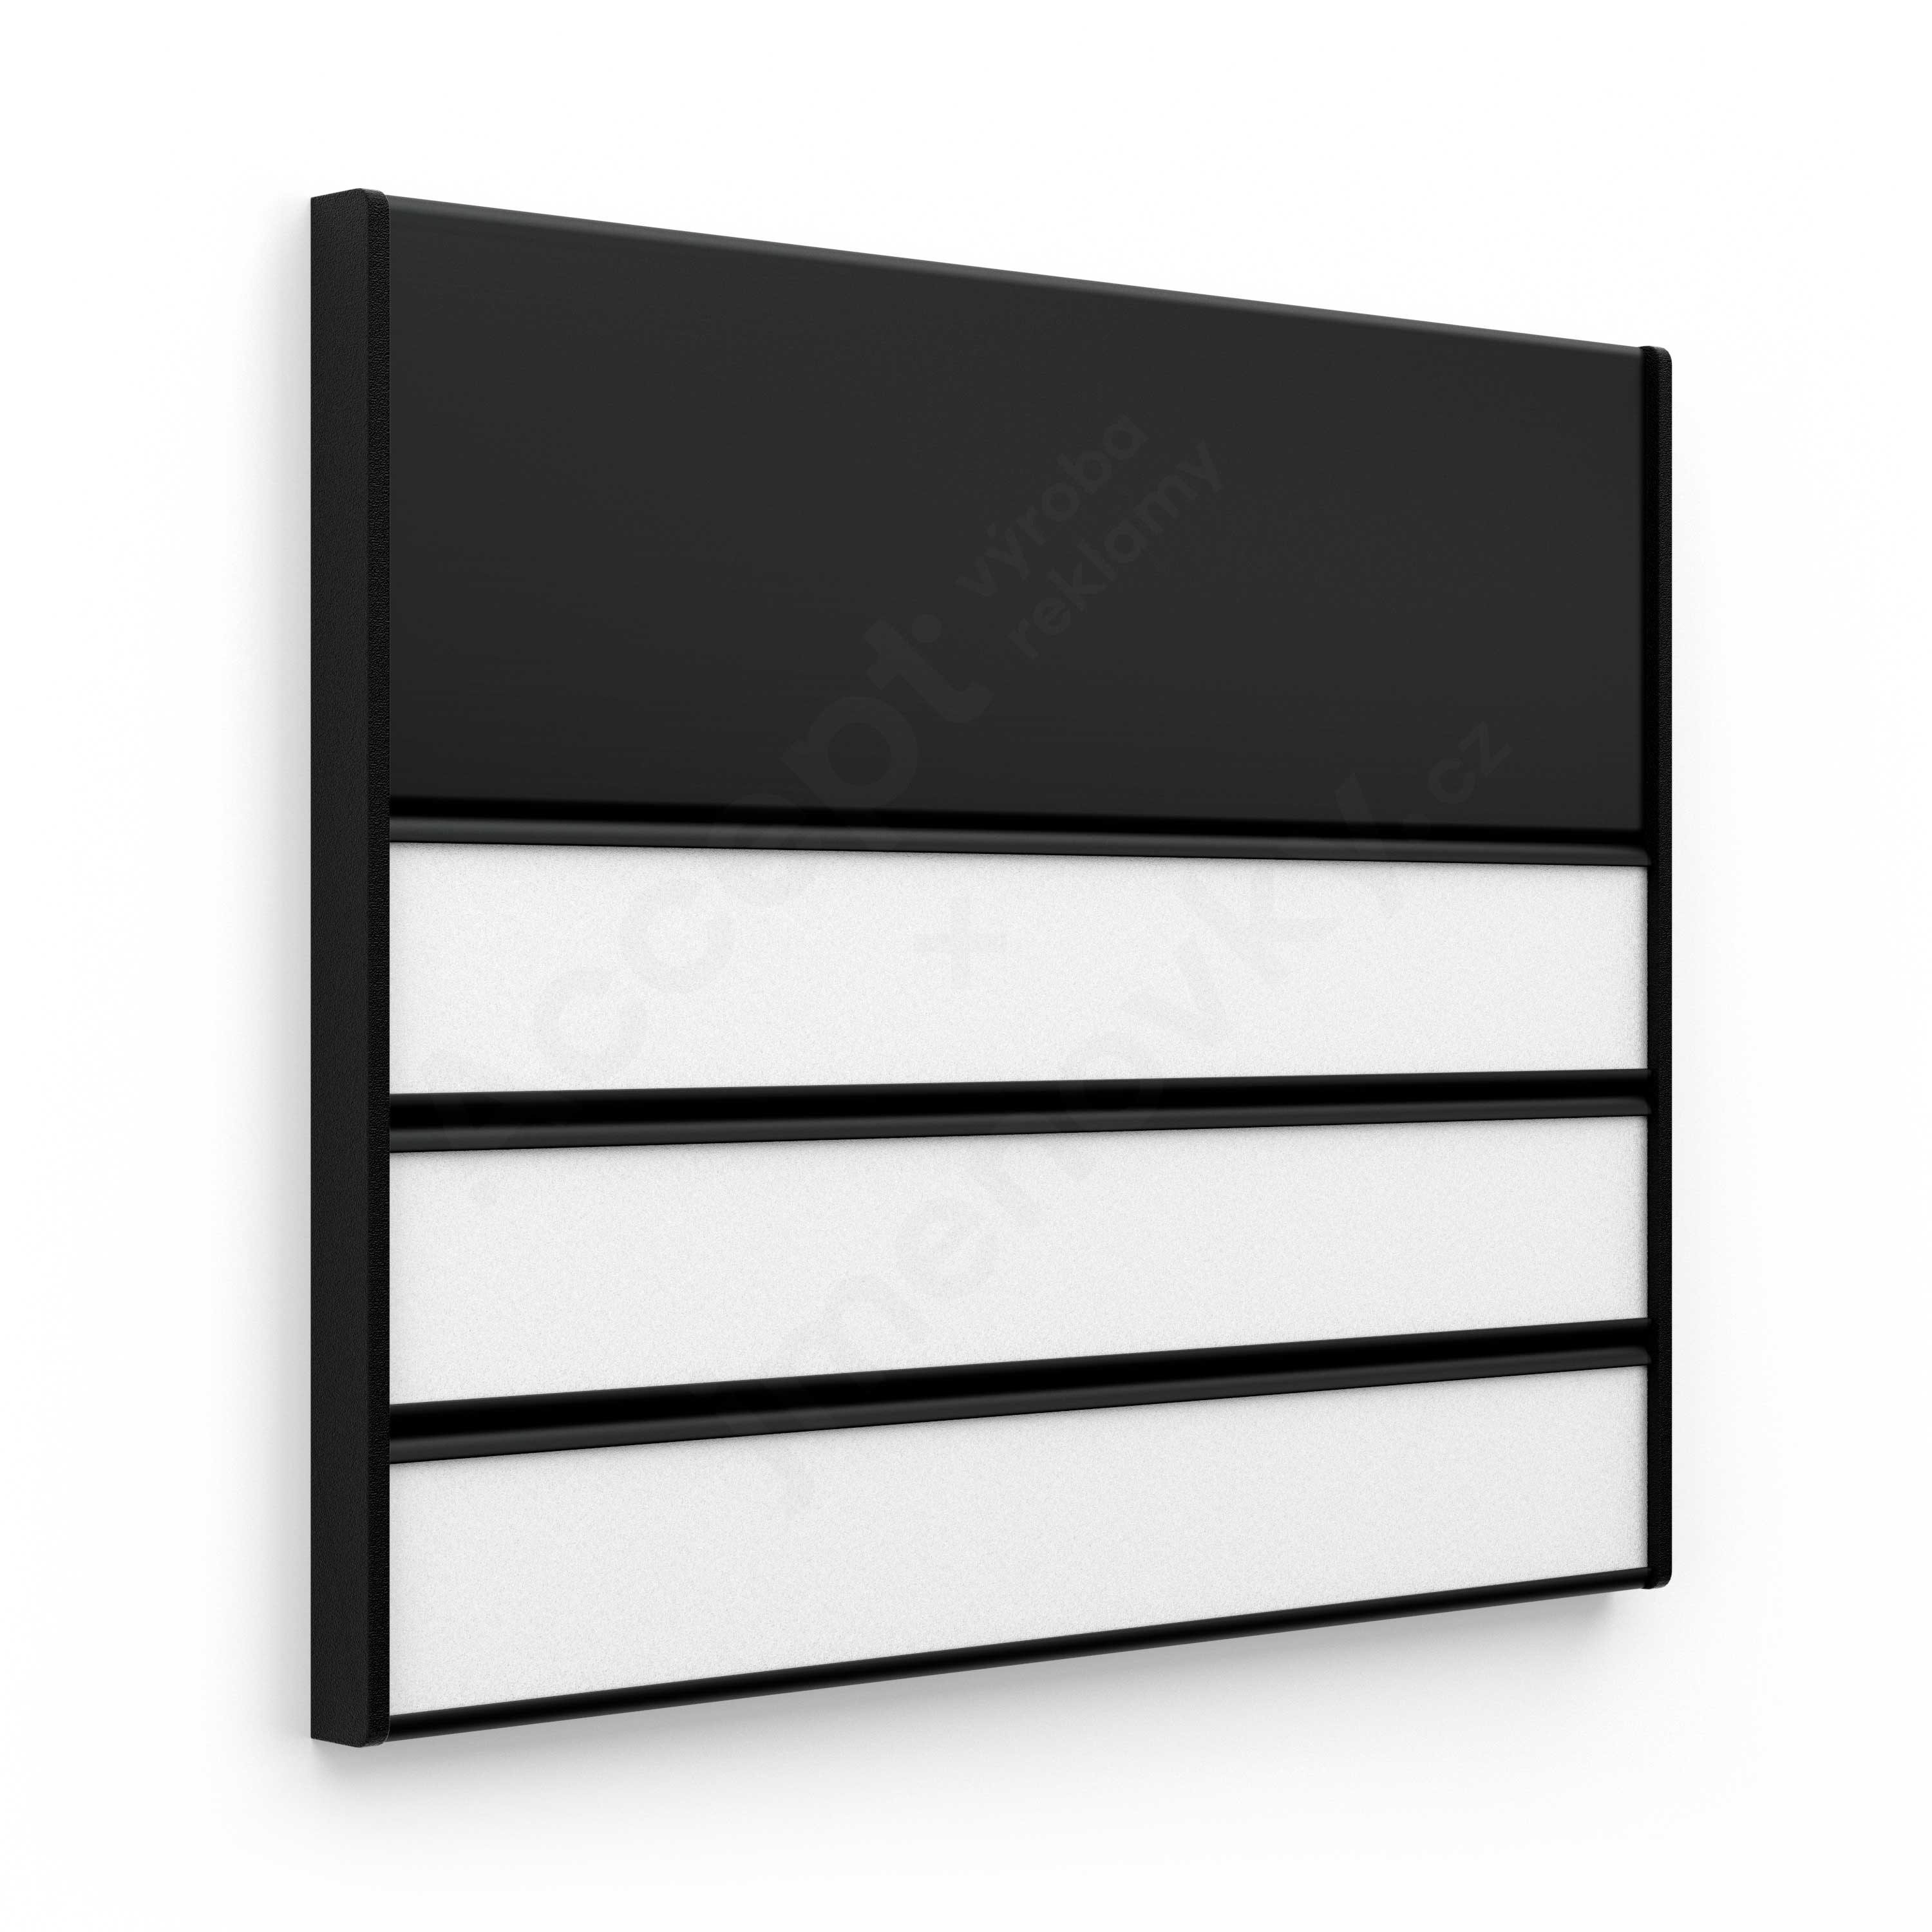 Dveřní tabulka ACS černá (kombinovaný systém, 187 x 156 mm)